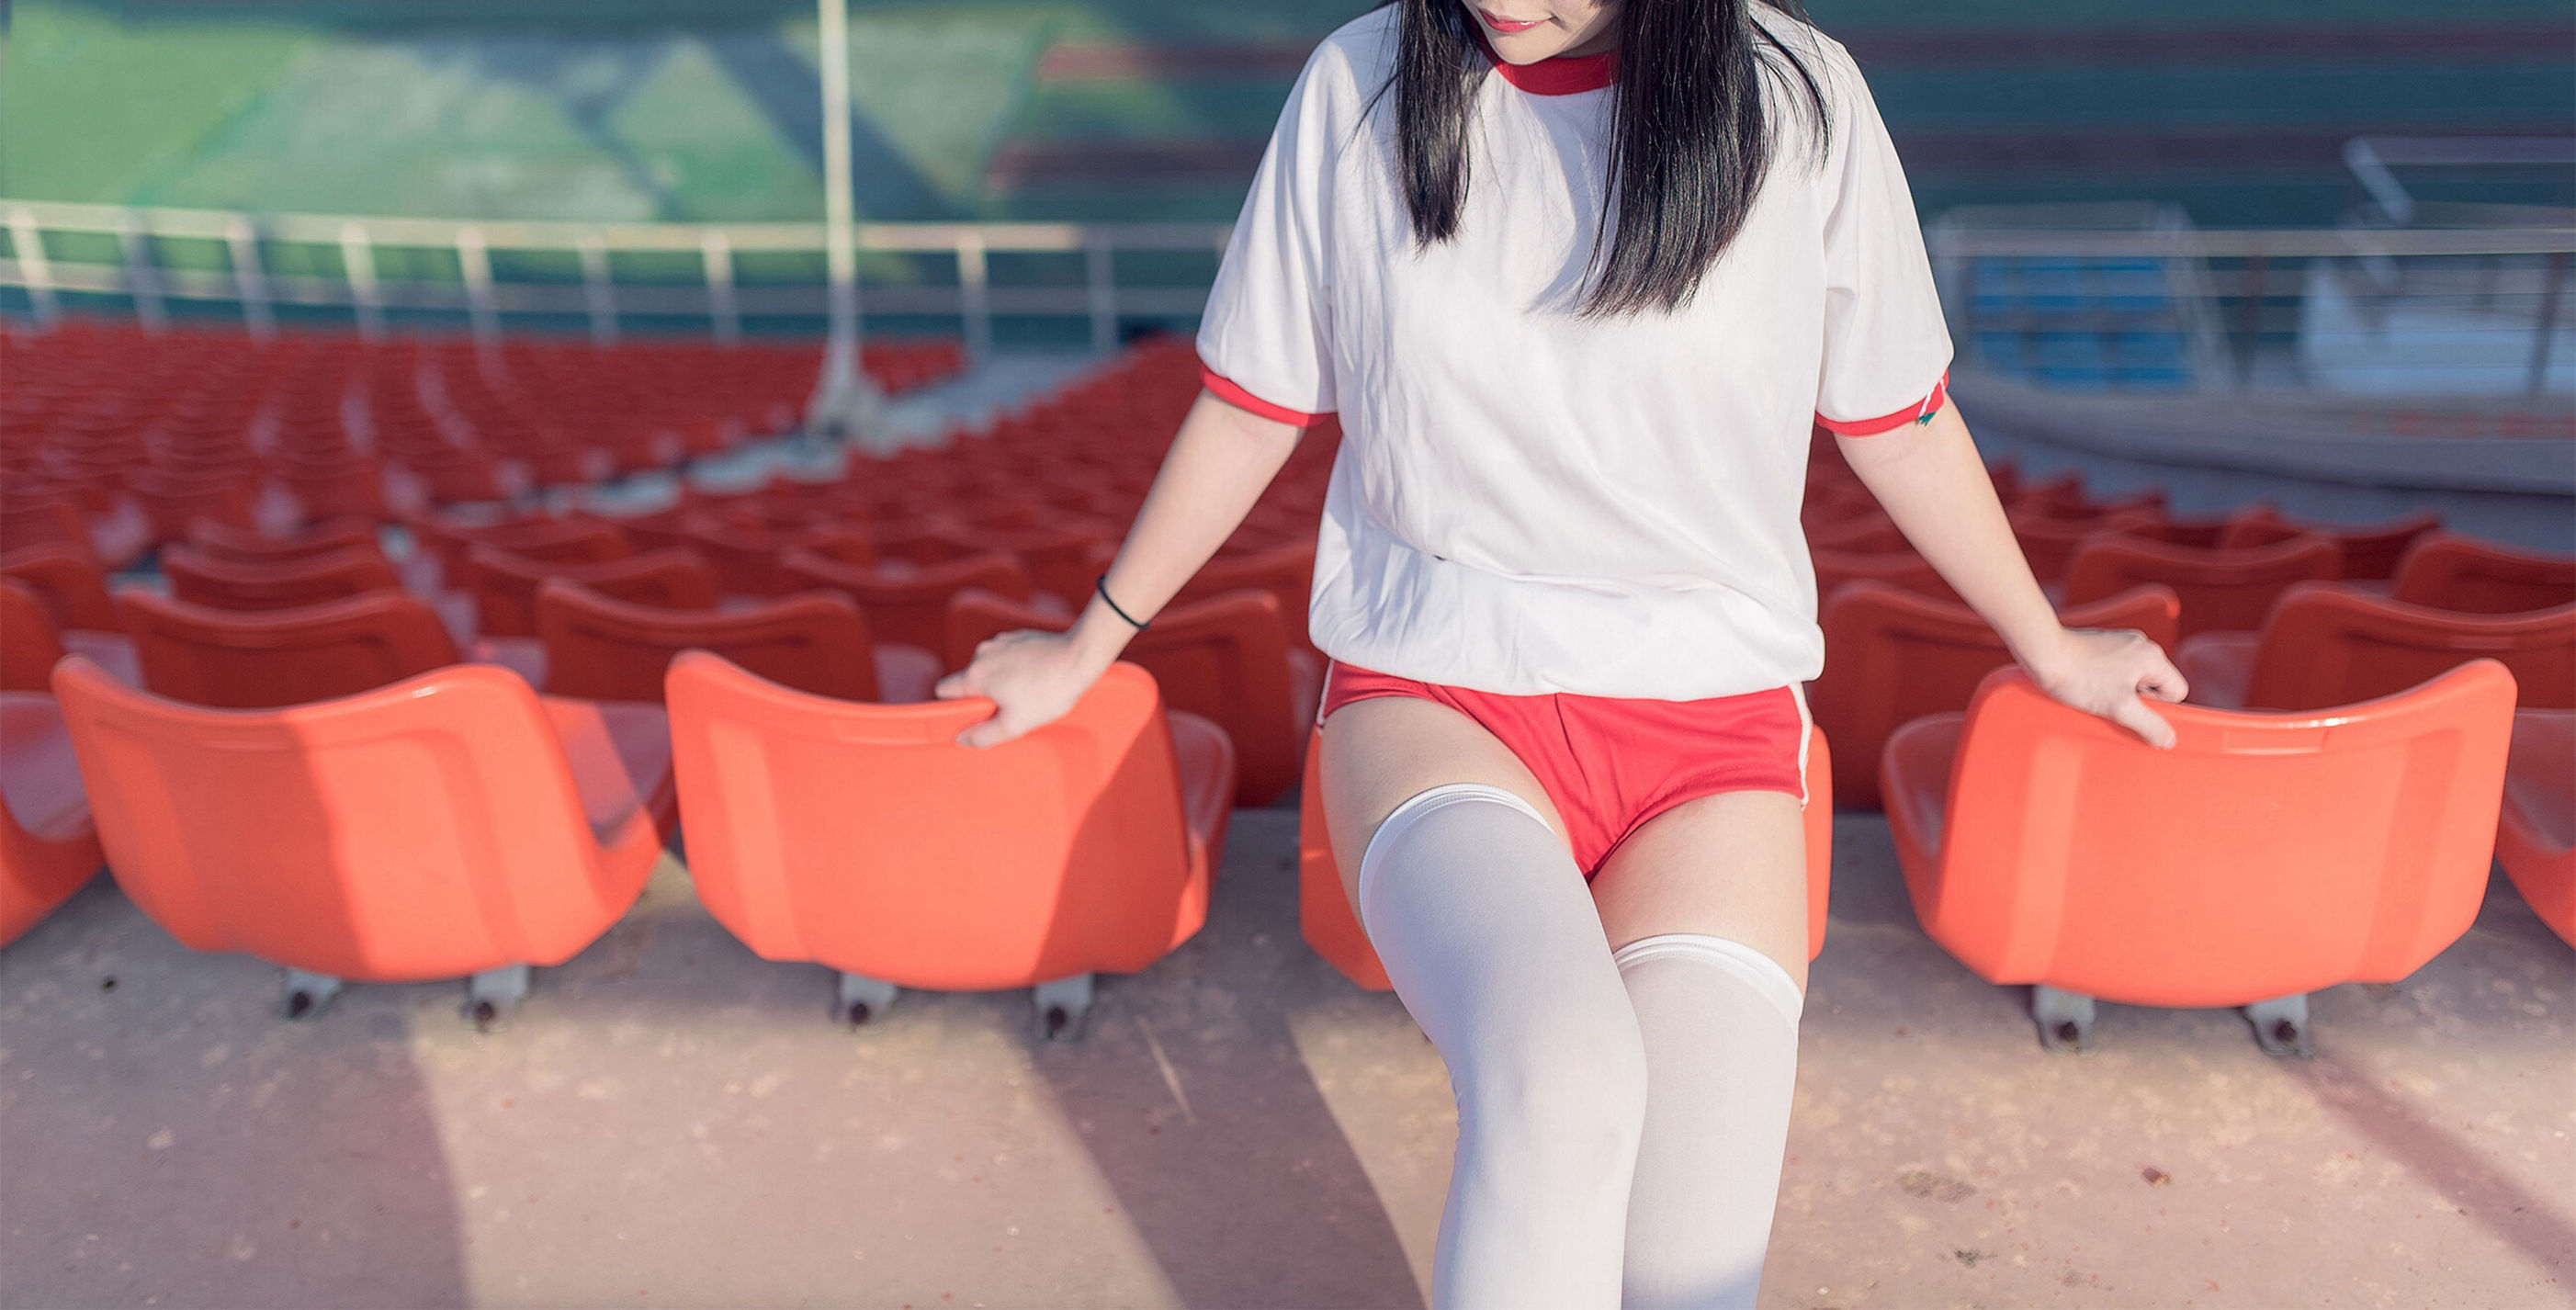 [风之领域] NO.112 运动场上的白丝体操服少女-番茄美图